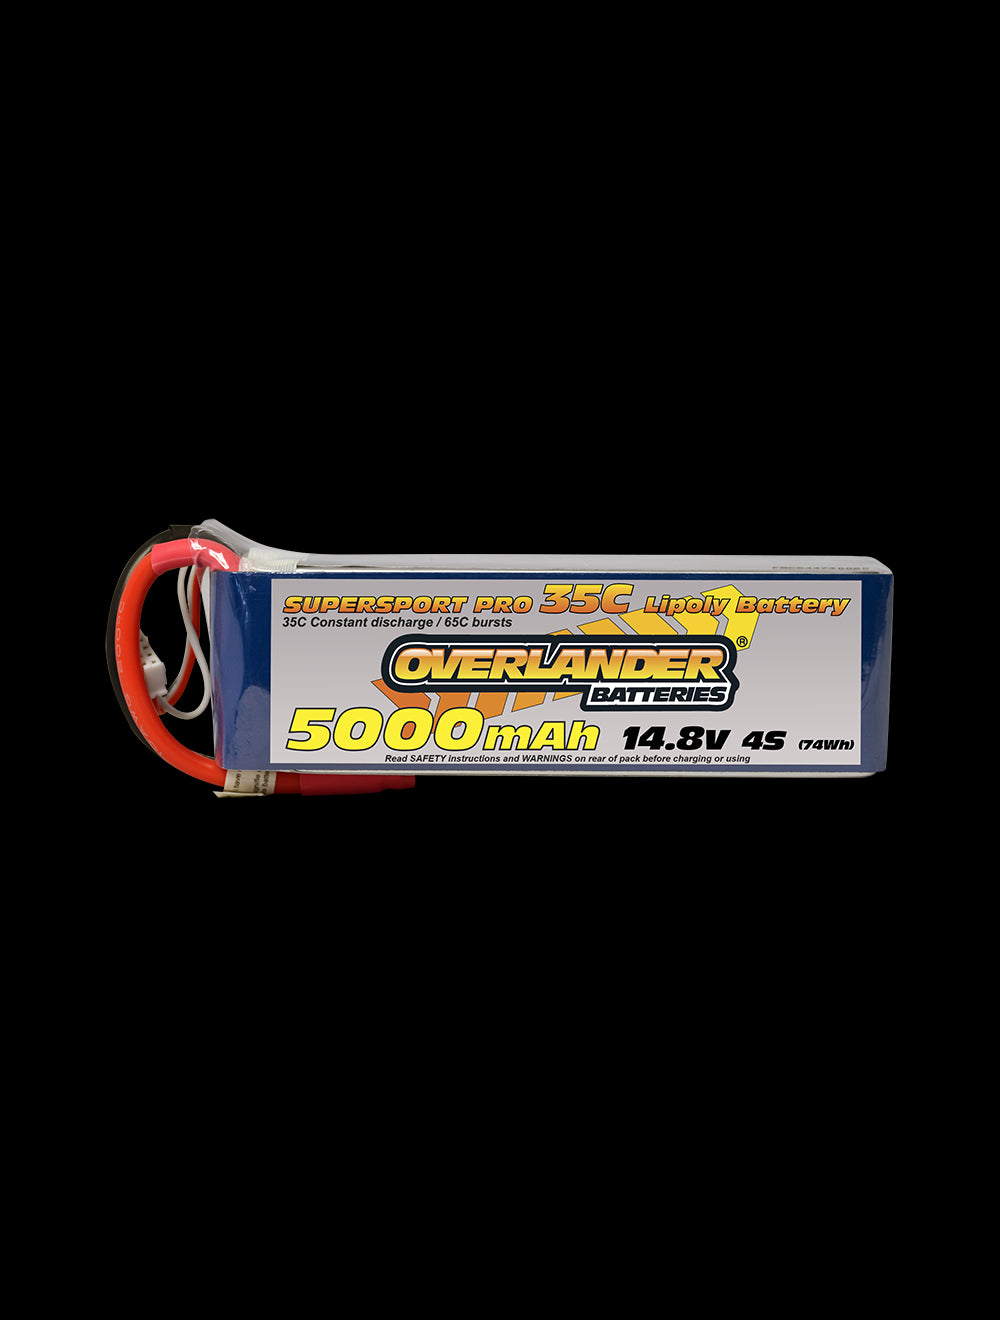 Overlander 5000mAh 14.8V 4S 35C Supersport Pro LiPo Battery - EC5 Connector 2578